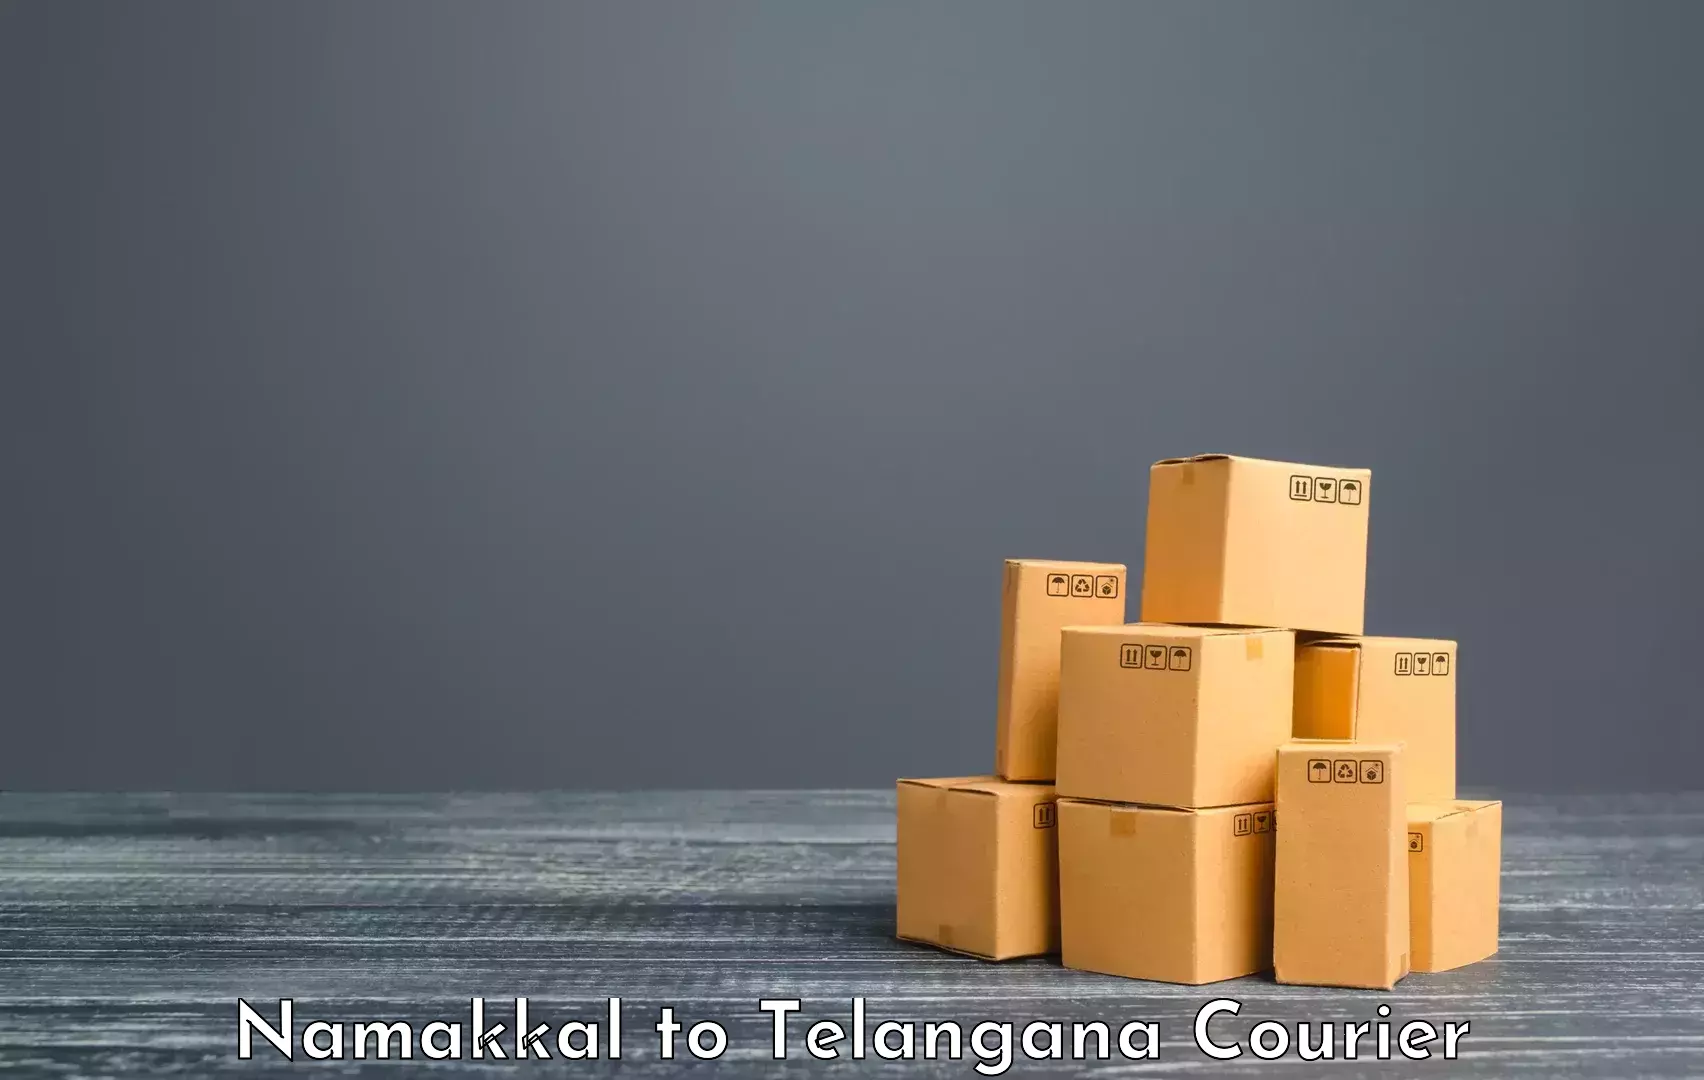 Luggage delivery network Namakkal to IIT Hyderabad